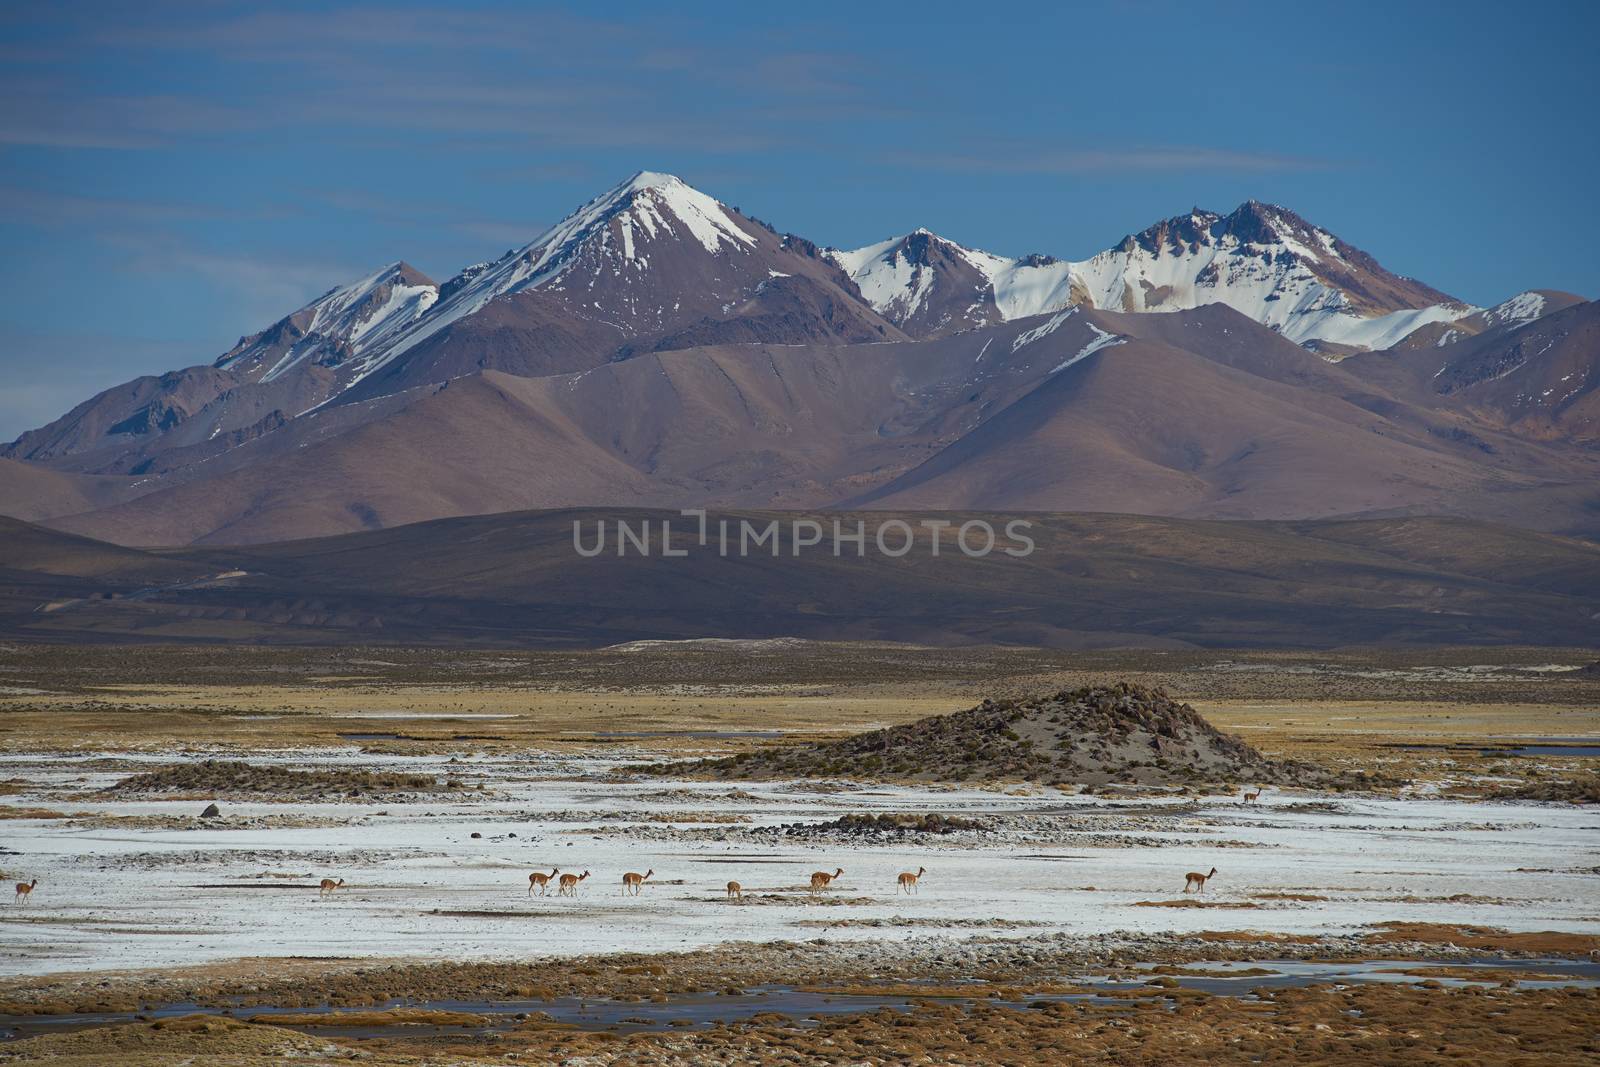 Vicuna on the Altiplano by JeremyRichards